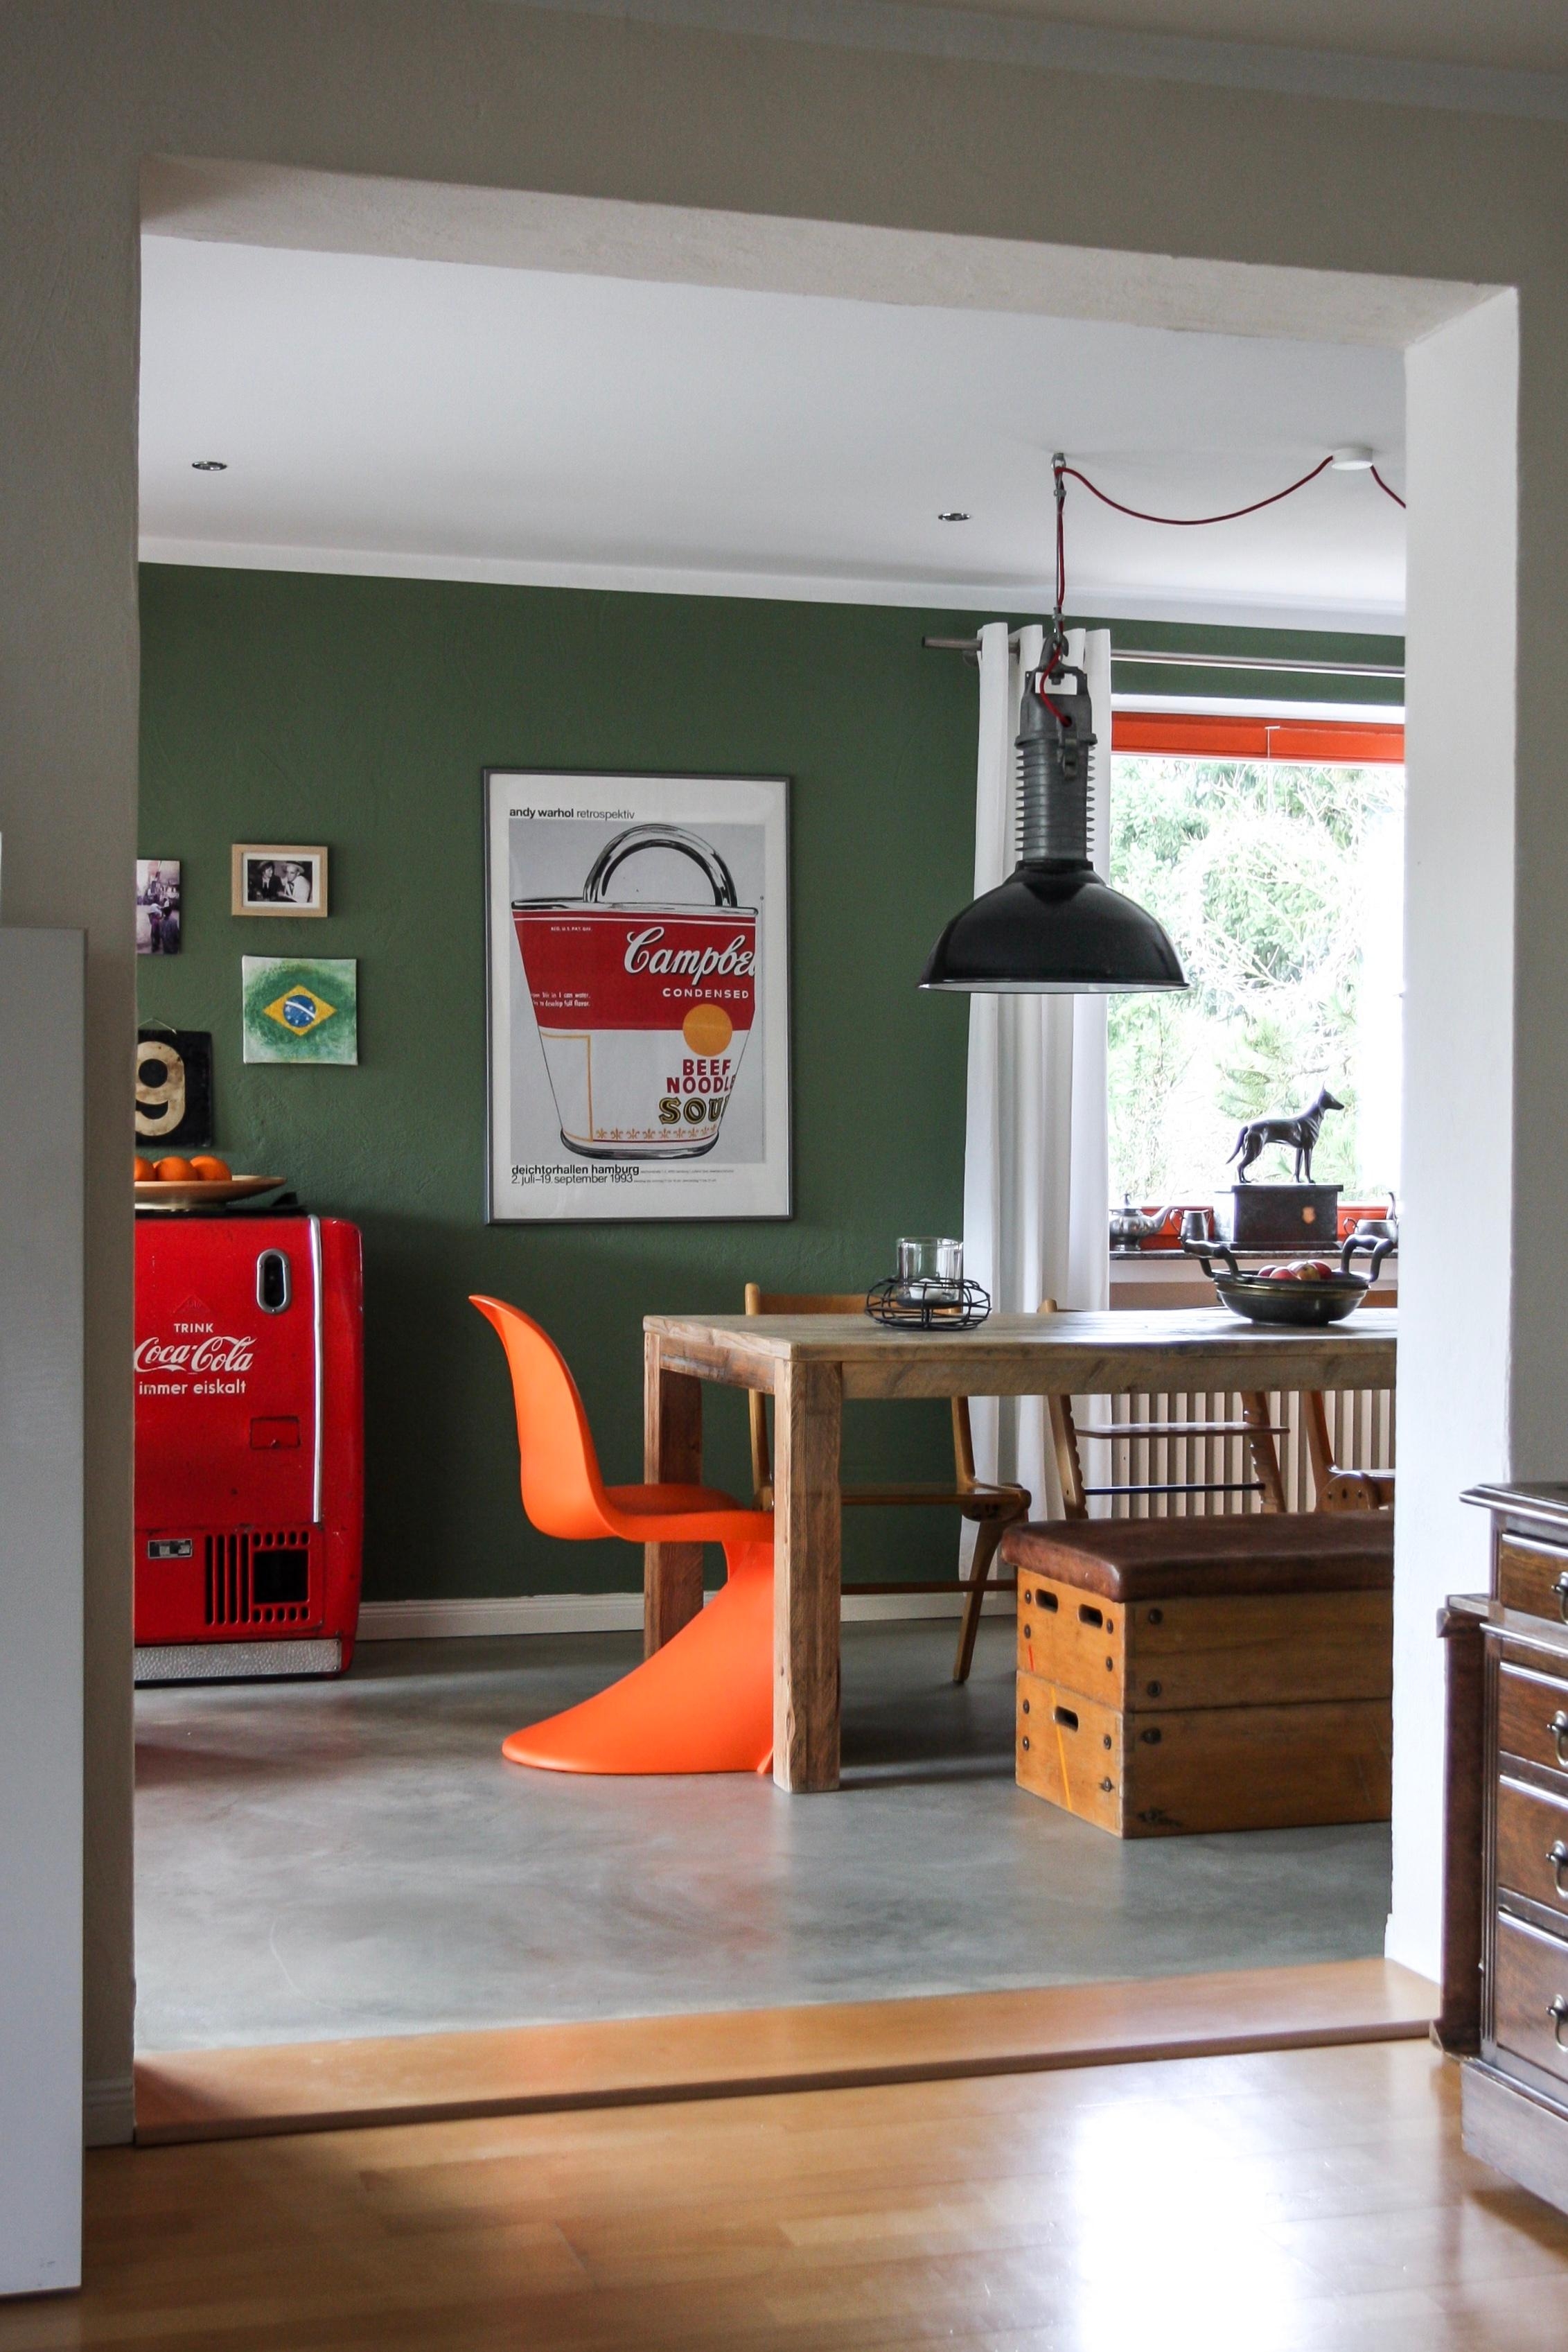 Unser Esszimmer, ein Mix aus alt & neu, vintage & modern #esszimmer #vintage #industrialdesign #holz #beton